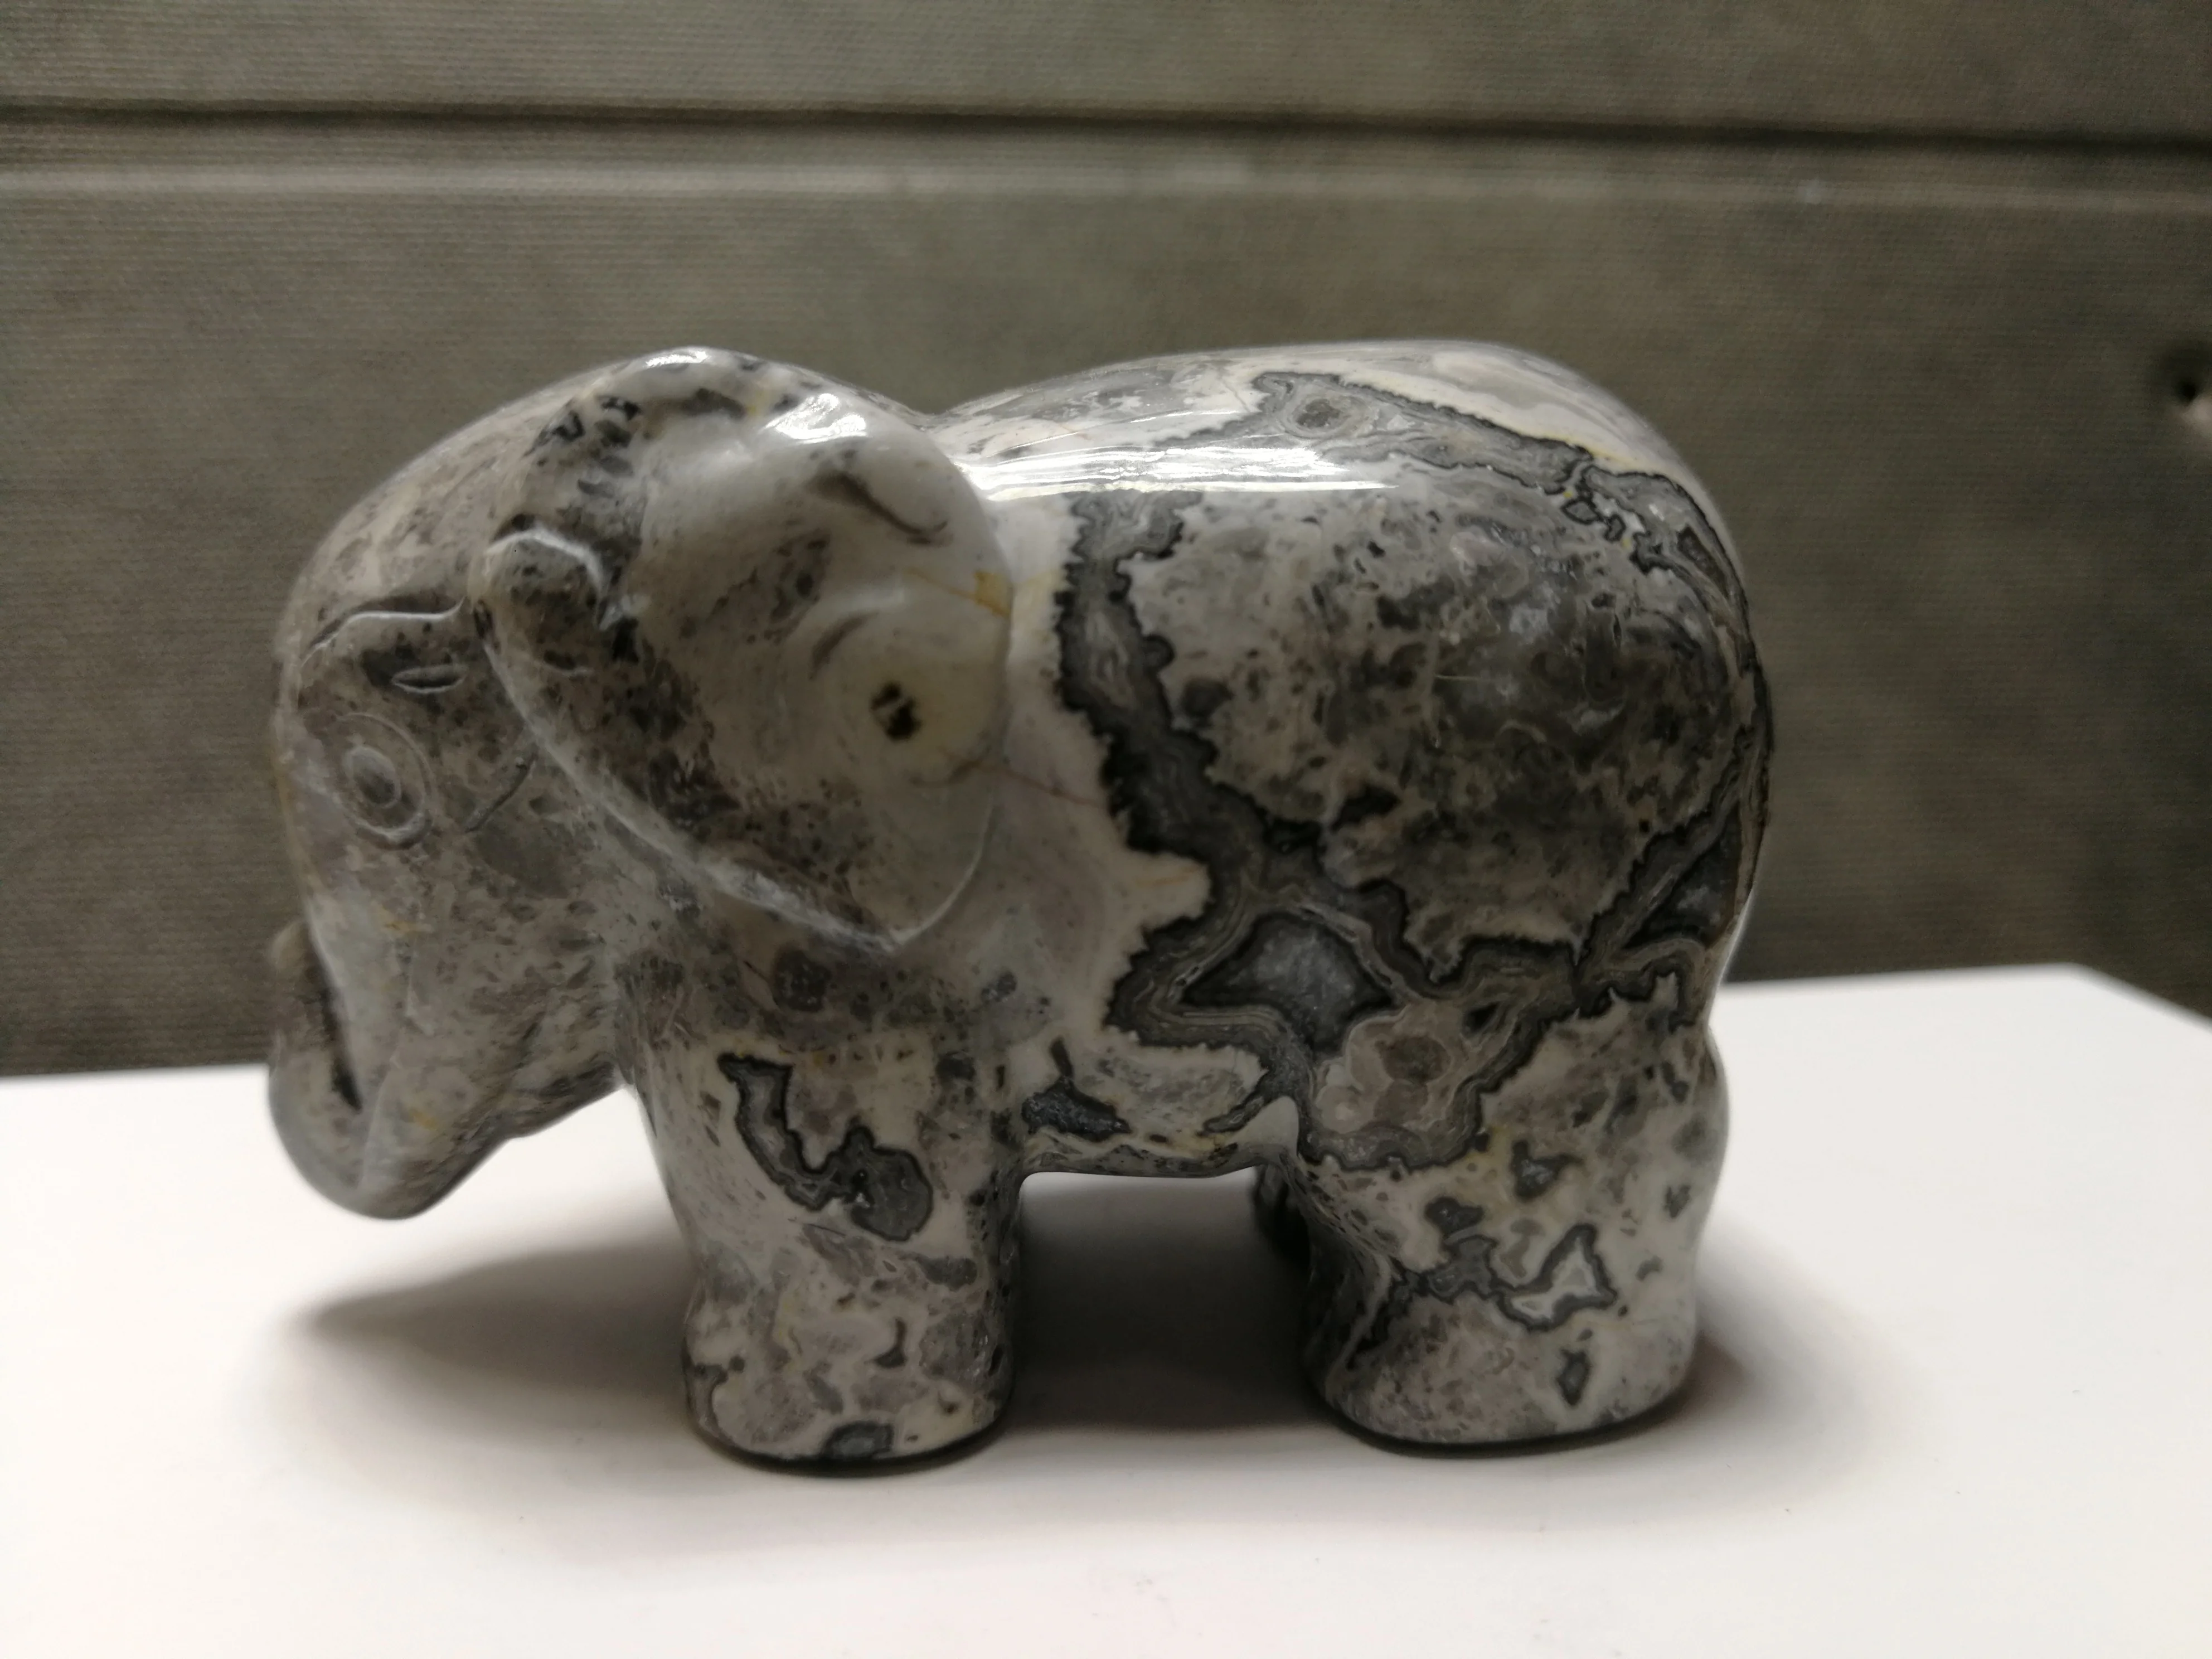 207,2 gNatural серый камень "Зебра", выгравированный вручную слонов, исцеление --- подача заявки на 12 от AliExpress WW